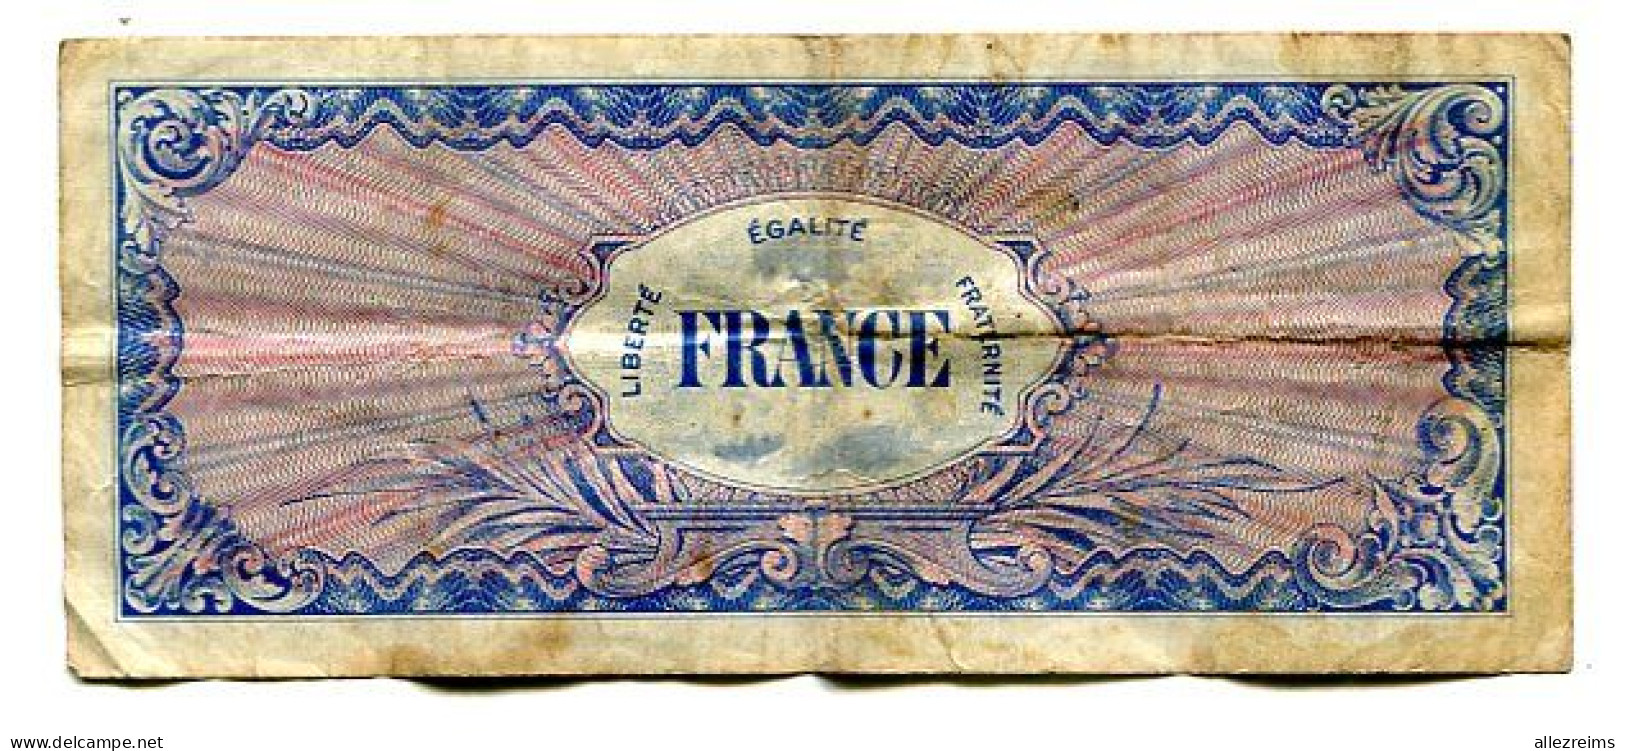 Billet De 100 F France  1944 Débarquement  VOIR ETAT  §§§ - 1944 Flag/France